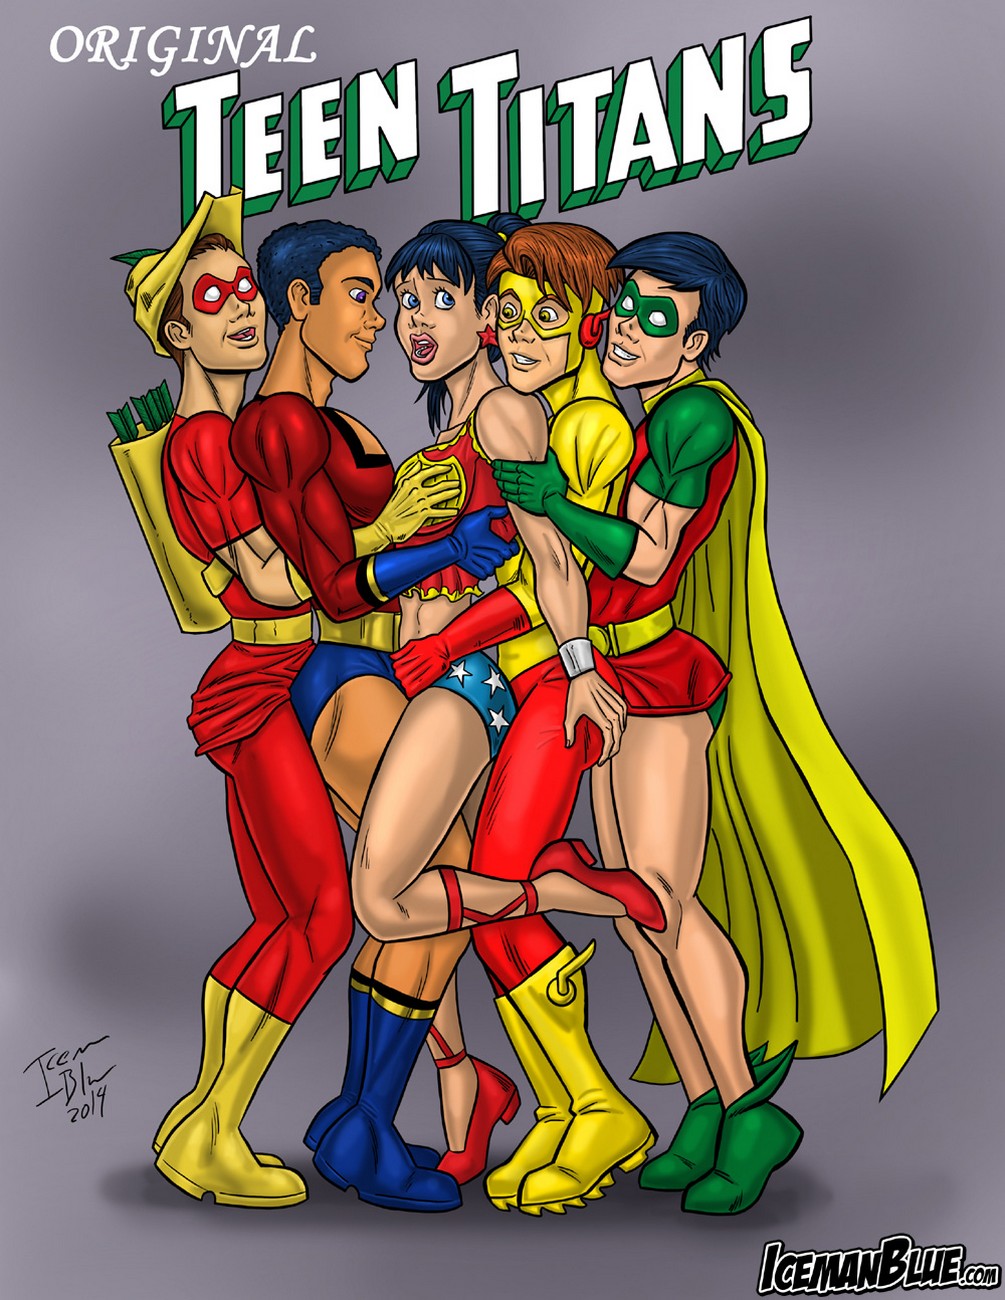 Original Teen Titans00